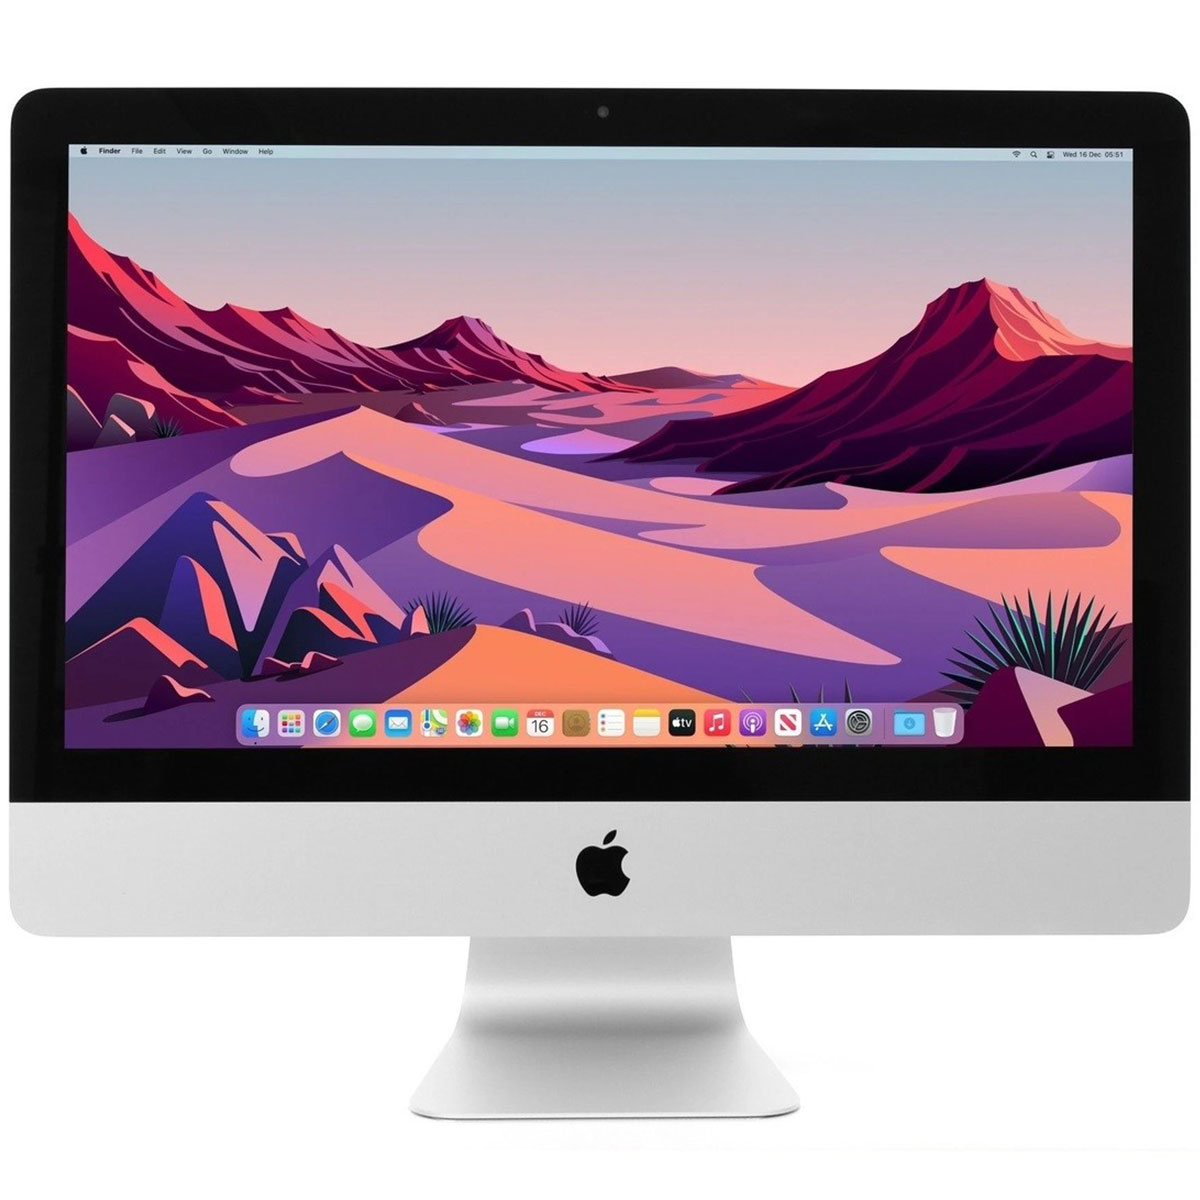 iMac 21.5inch 2015 Core i5 メモリ16GB検討させていただきます